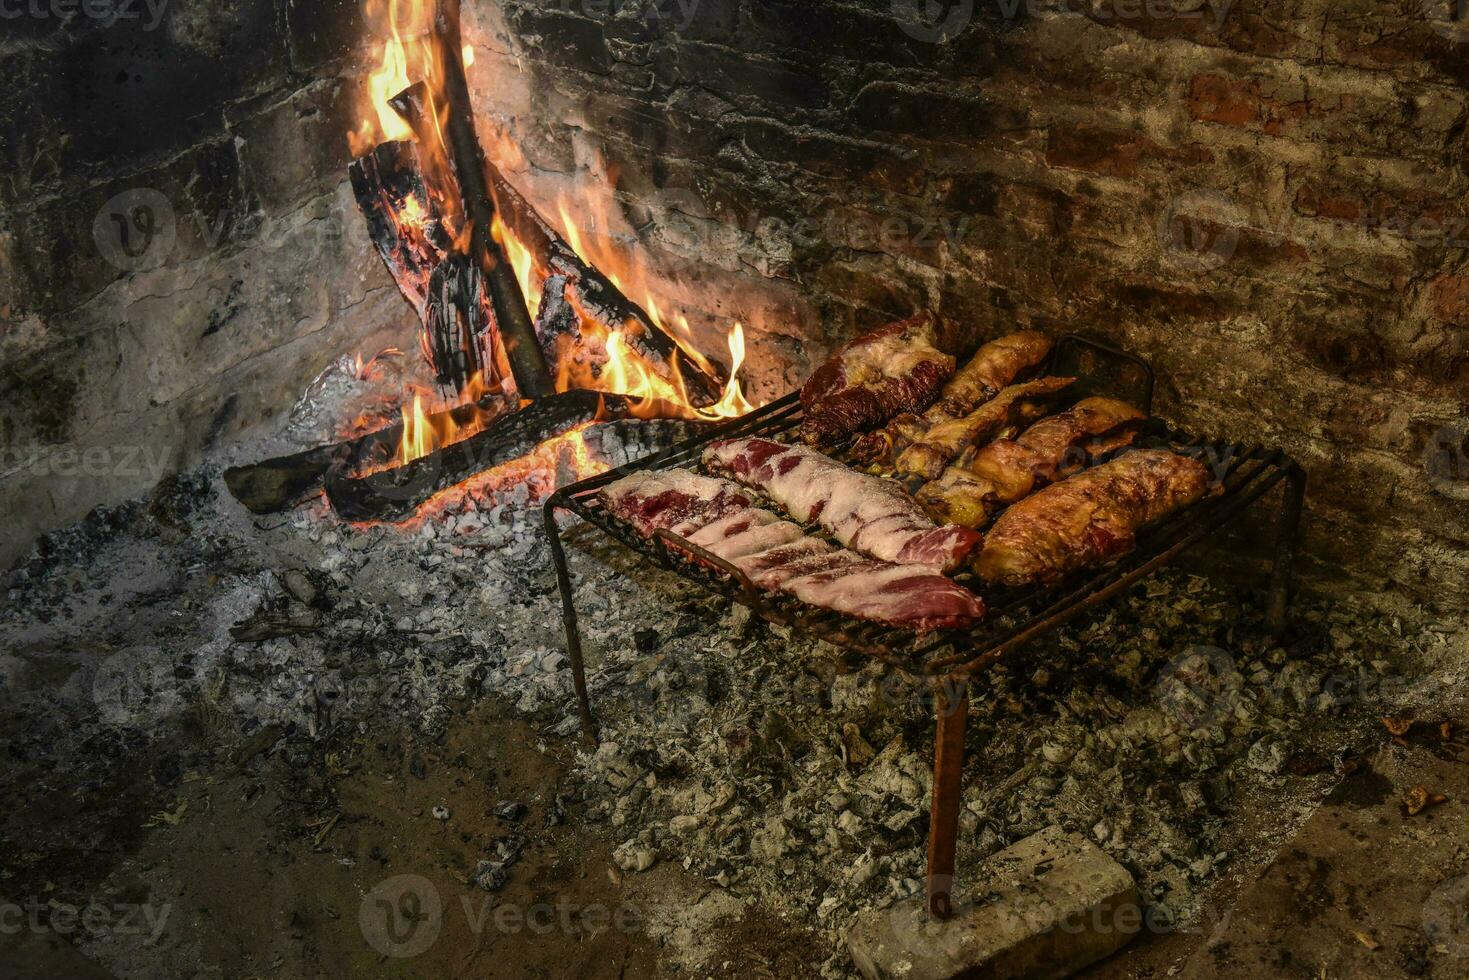 koe ribben vlees gegrild, gekookt met hout vuur, la pampa, Argentinië foto